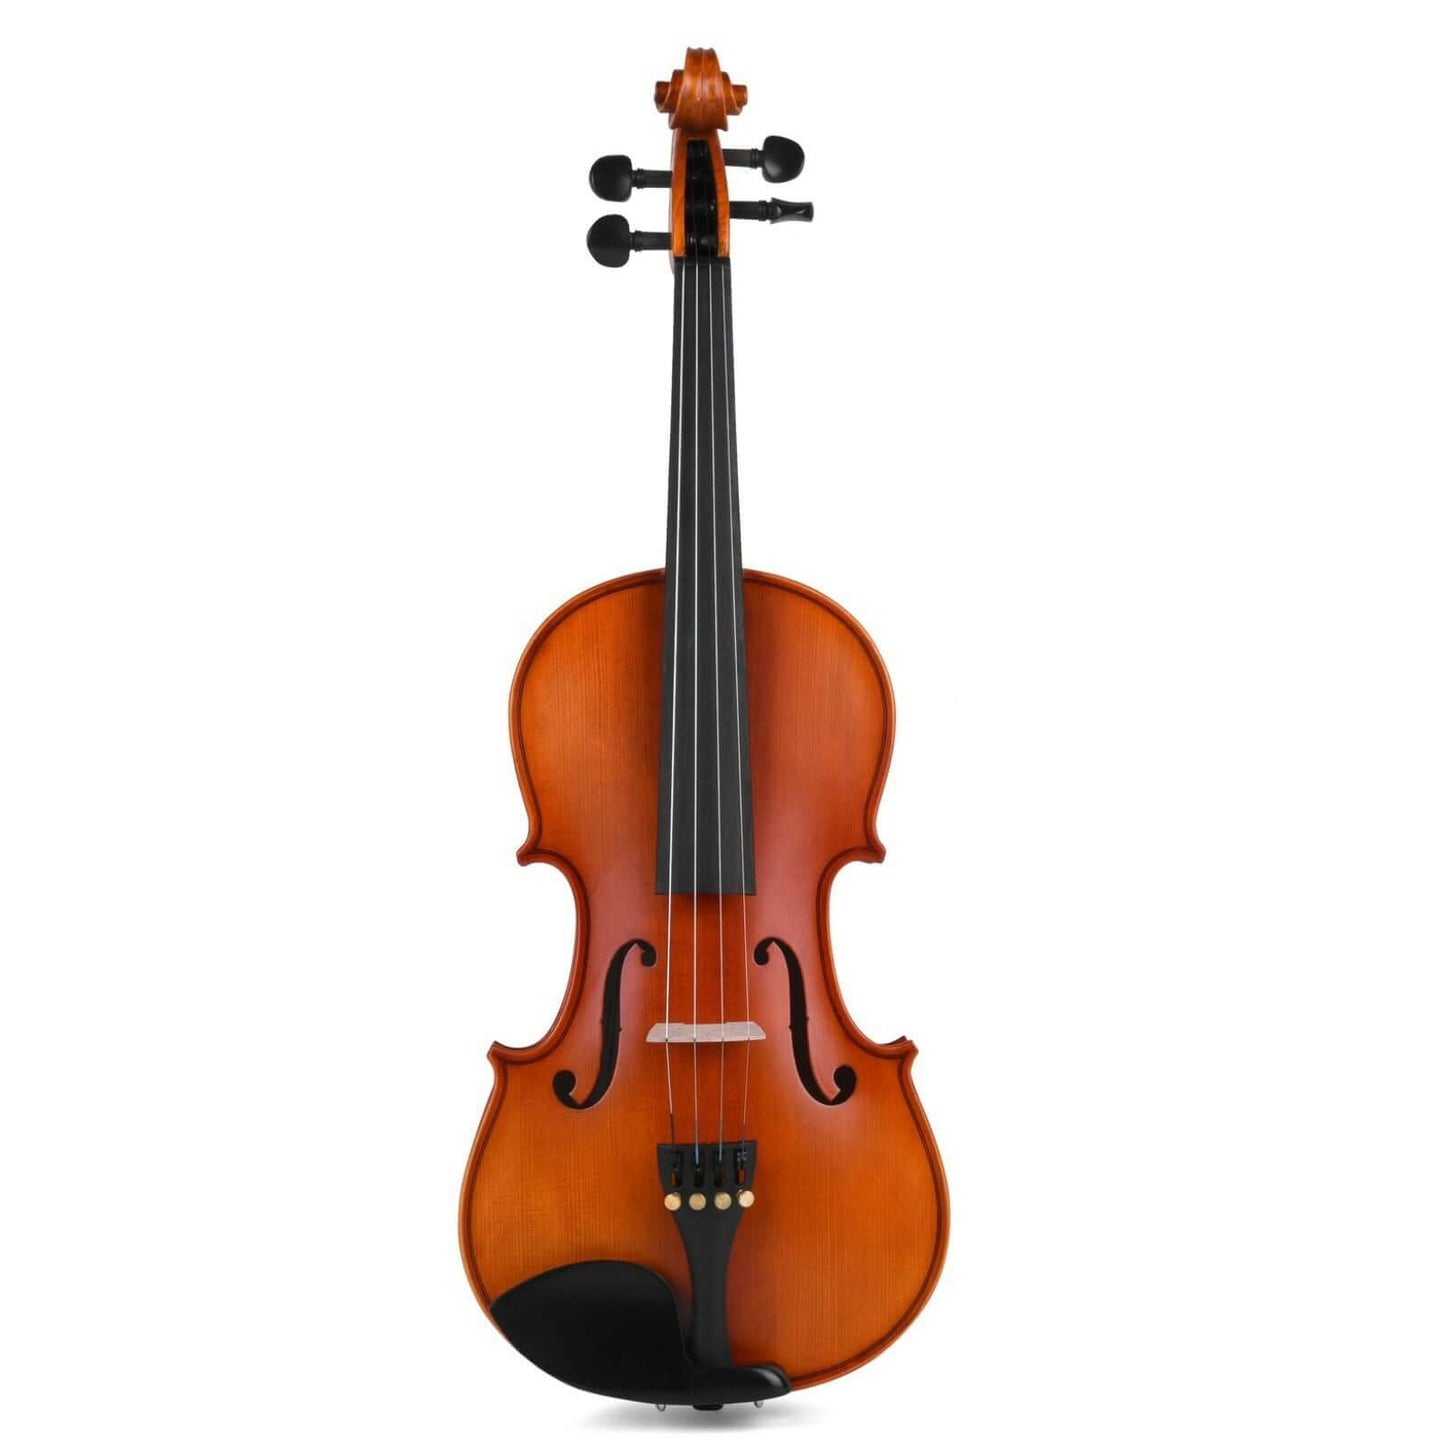 Axiom Concerto Violin Outfit - 1/4 Size Violin